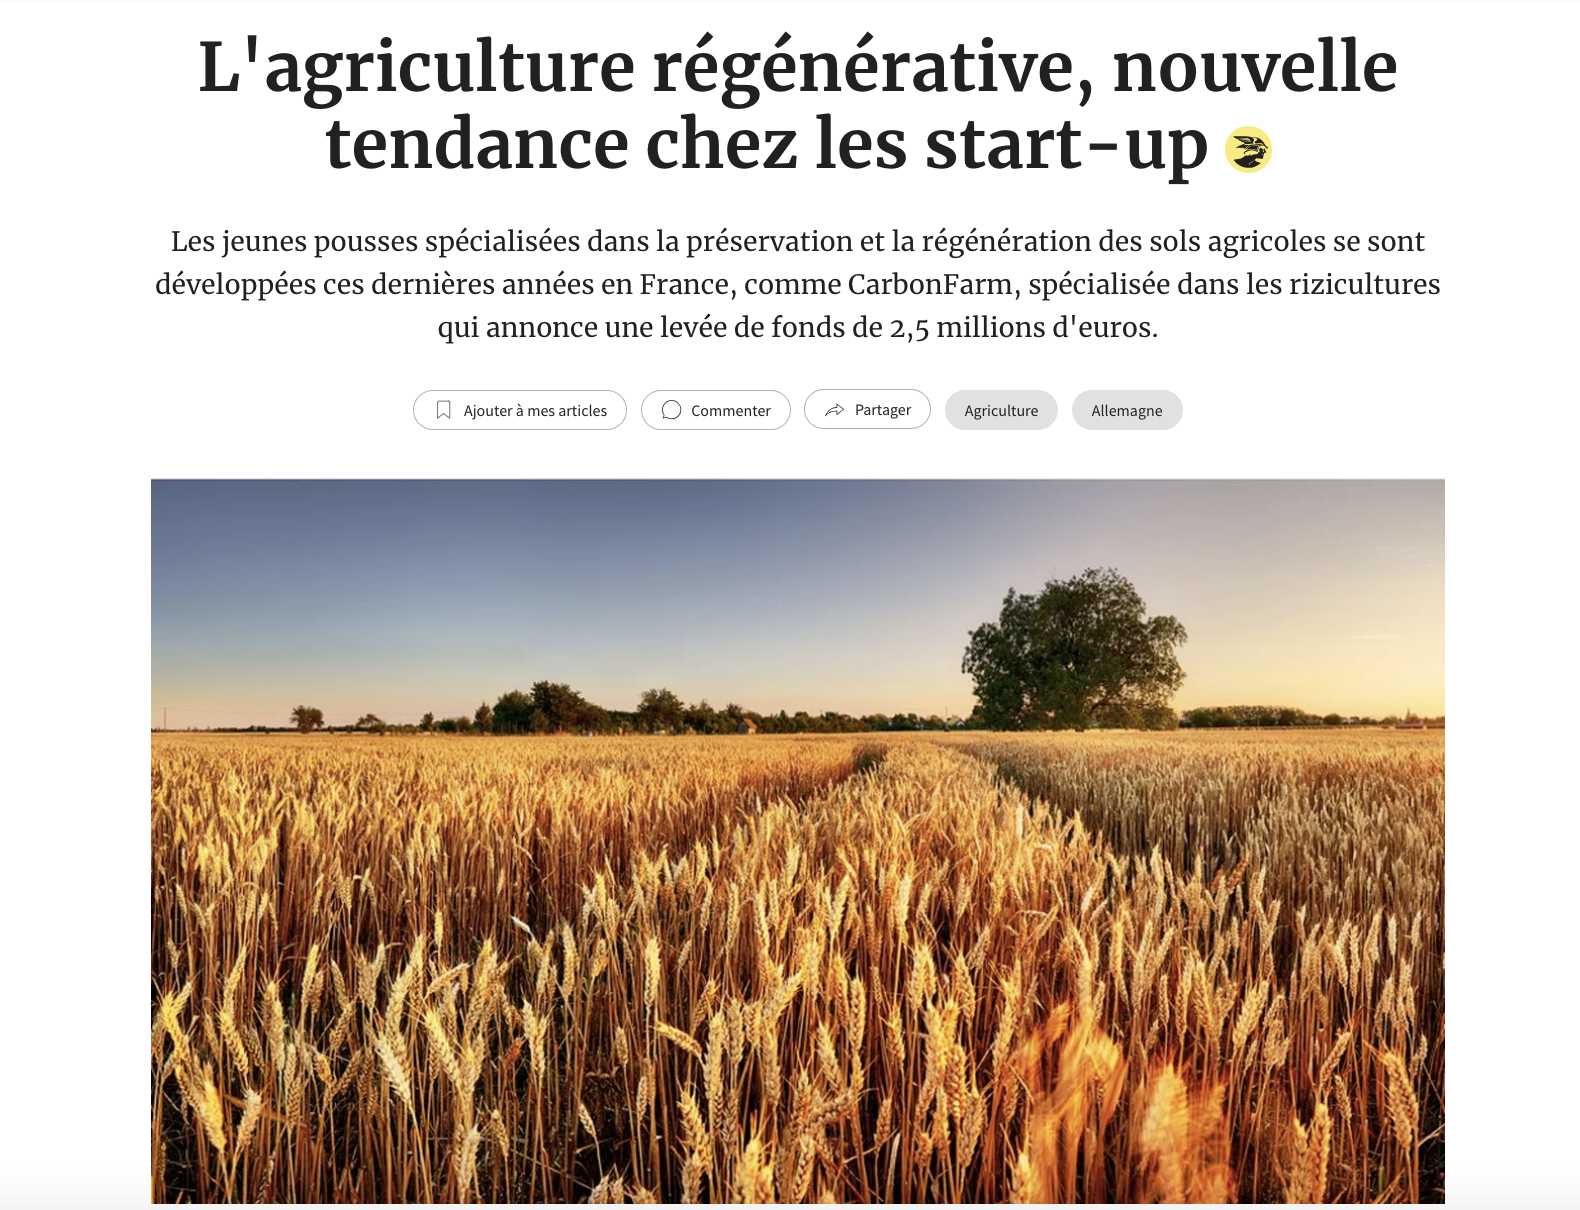 L’agriculture régénérative, nouvelle tendance chez les start-up